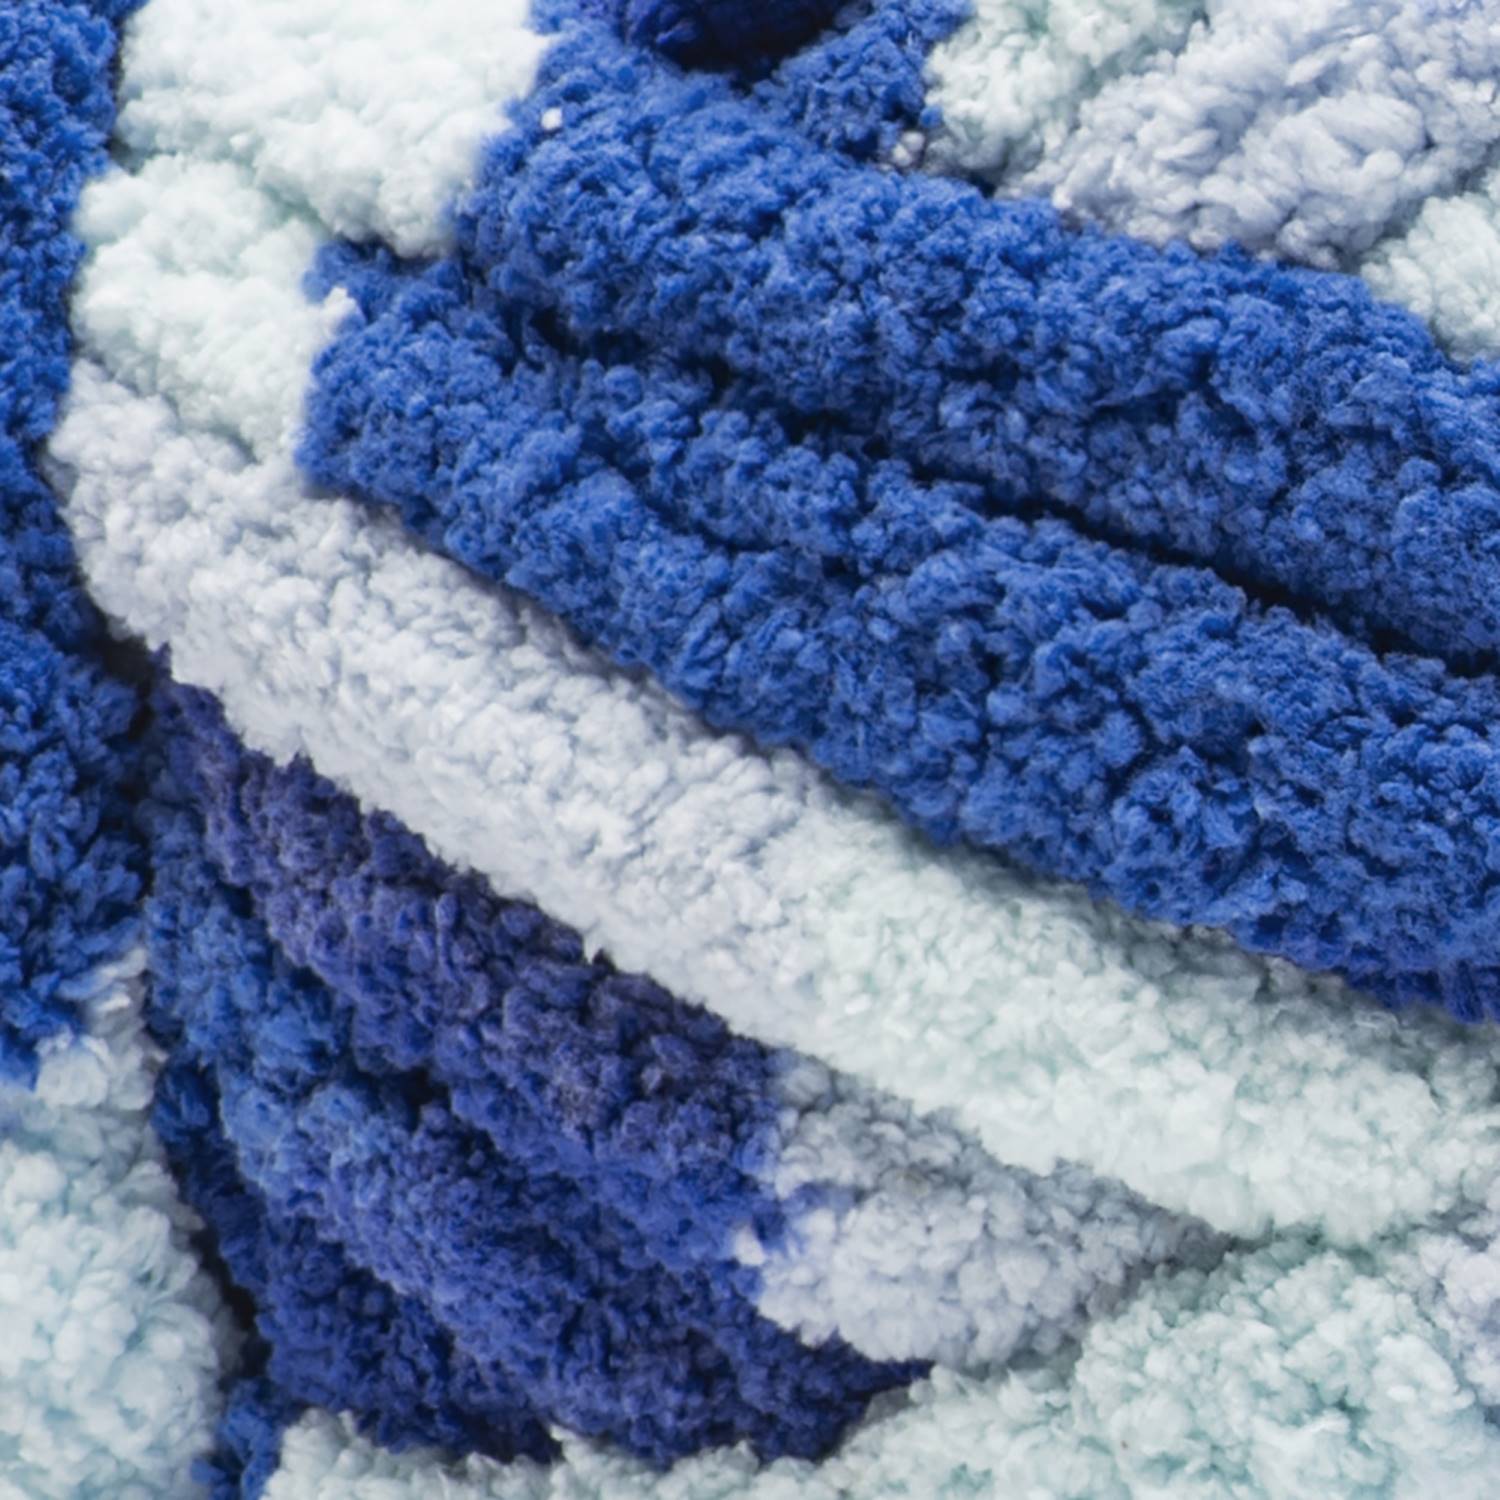 Bernat Blanket Extra Thick VINTAGE WHITE Yarn - 1 Pack of 600g/21oz -  Polyester - 7 Jumbo - Knitting/Crochet